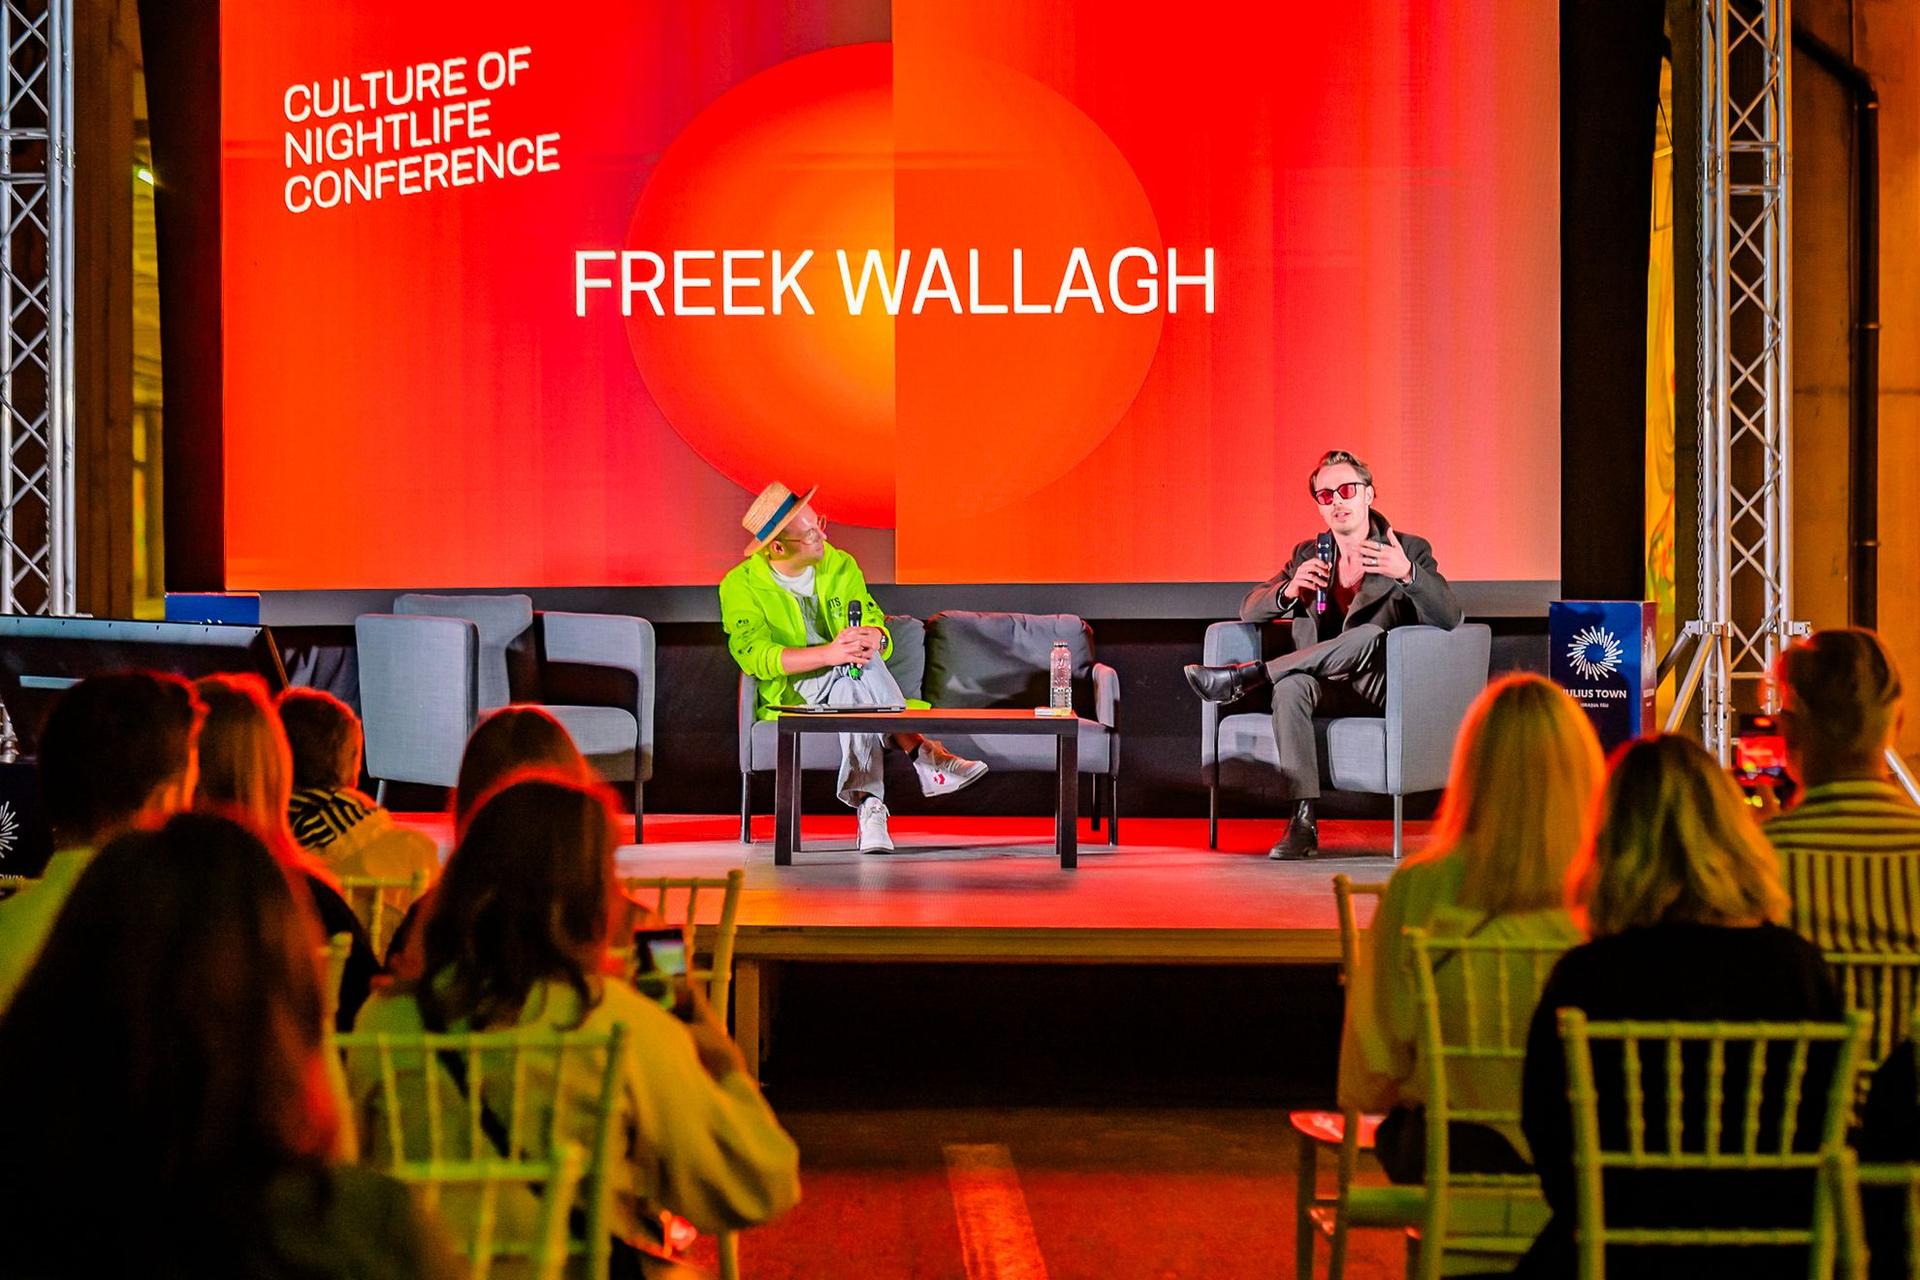 Freek Wallgh, primarul de noapte al Amsterdamului, la The Culture of Nightlife Conference a vorbit despre viața de noapte diversă, sigură și incluzivă.